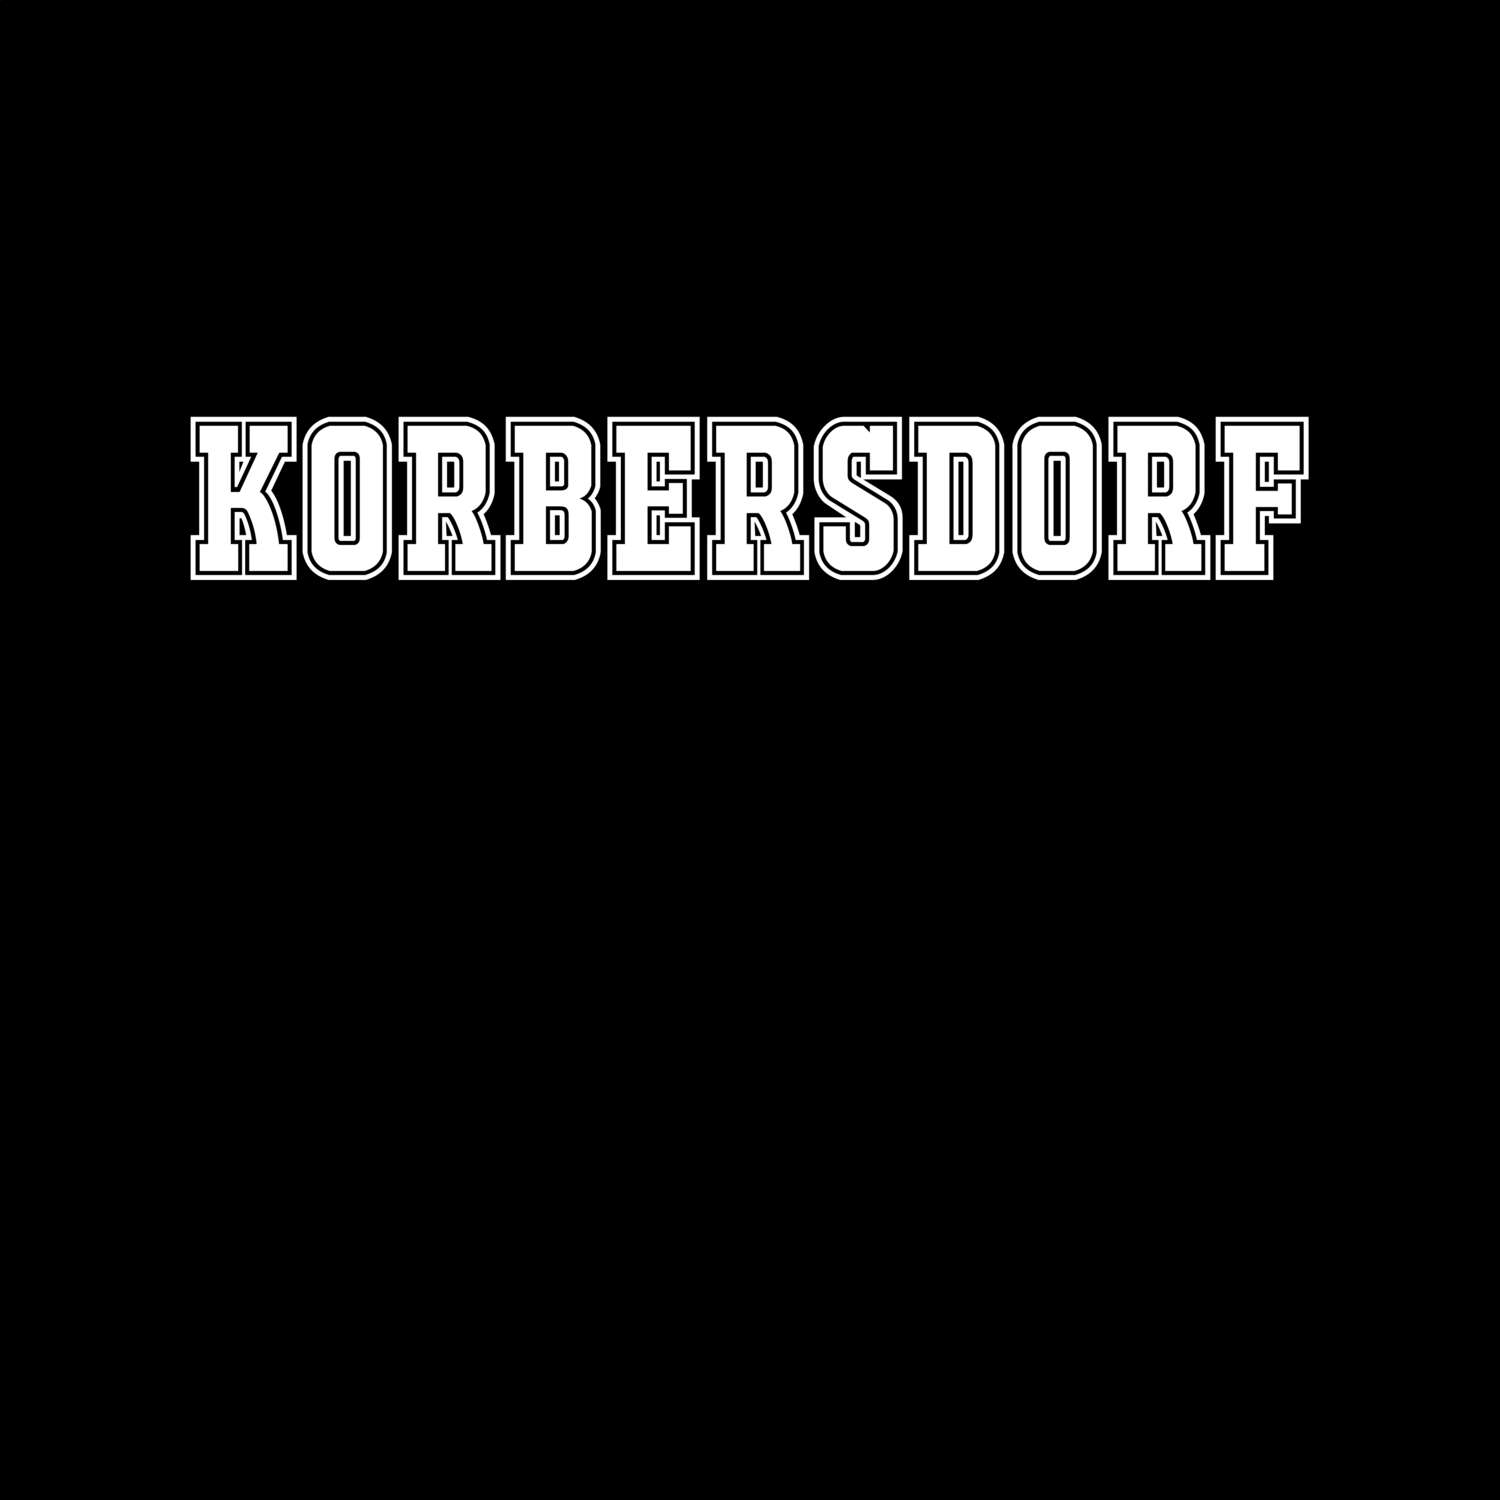 Korbersdorf T-Shirt »Classic«